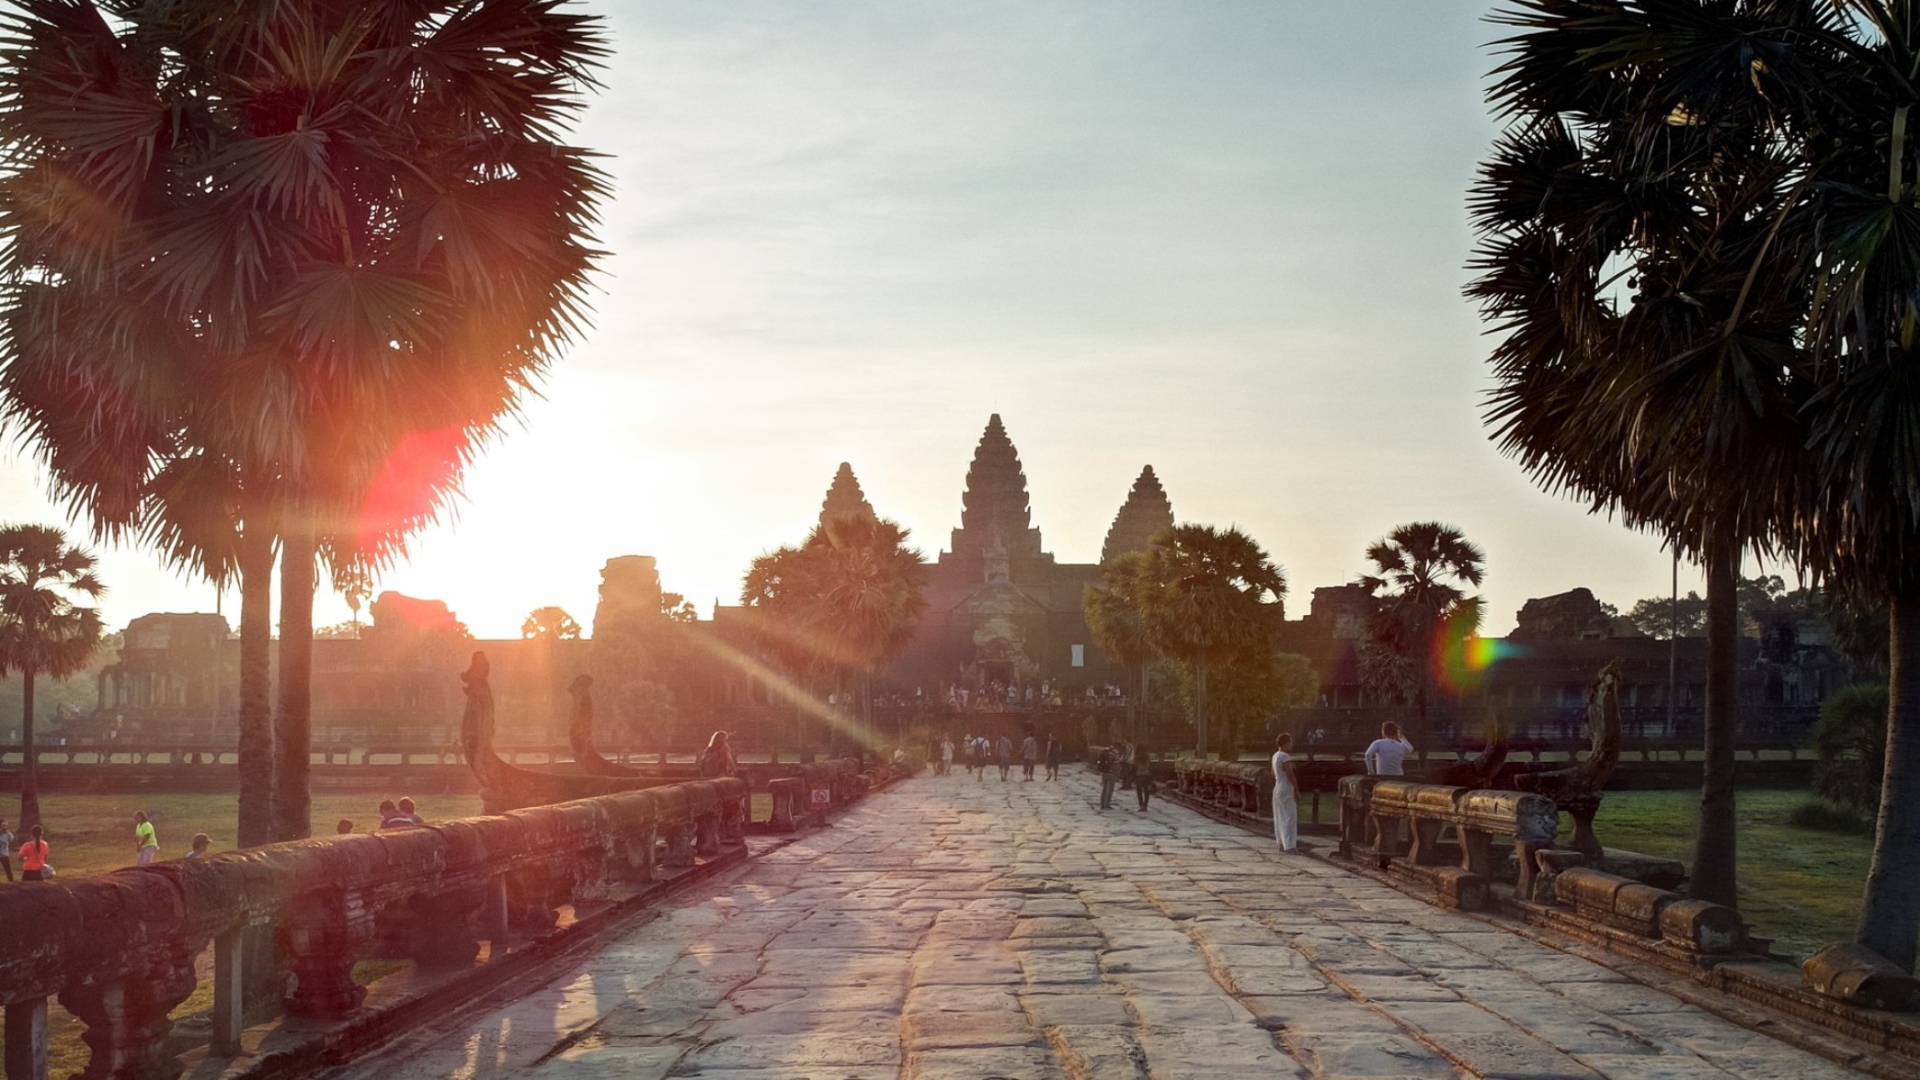 Walk at sunset at Angkor Wat in Cambodia